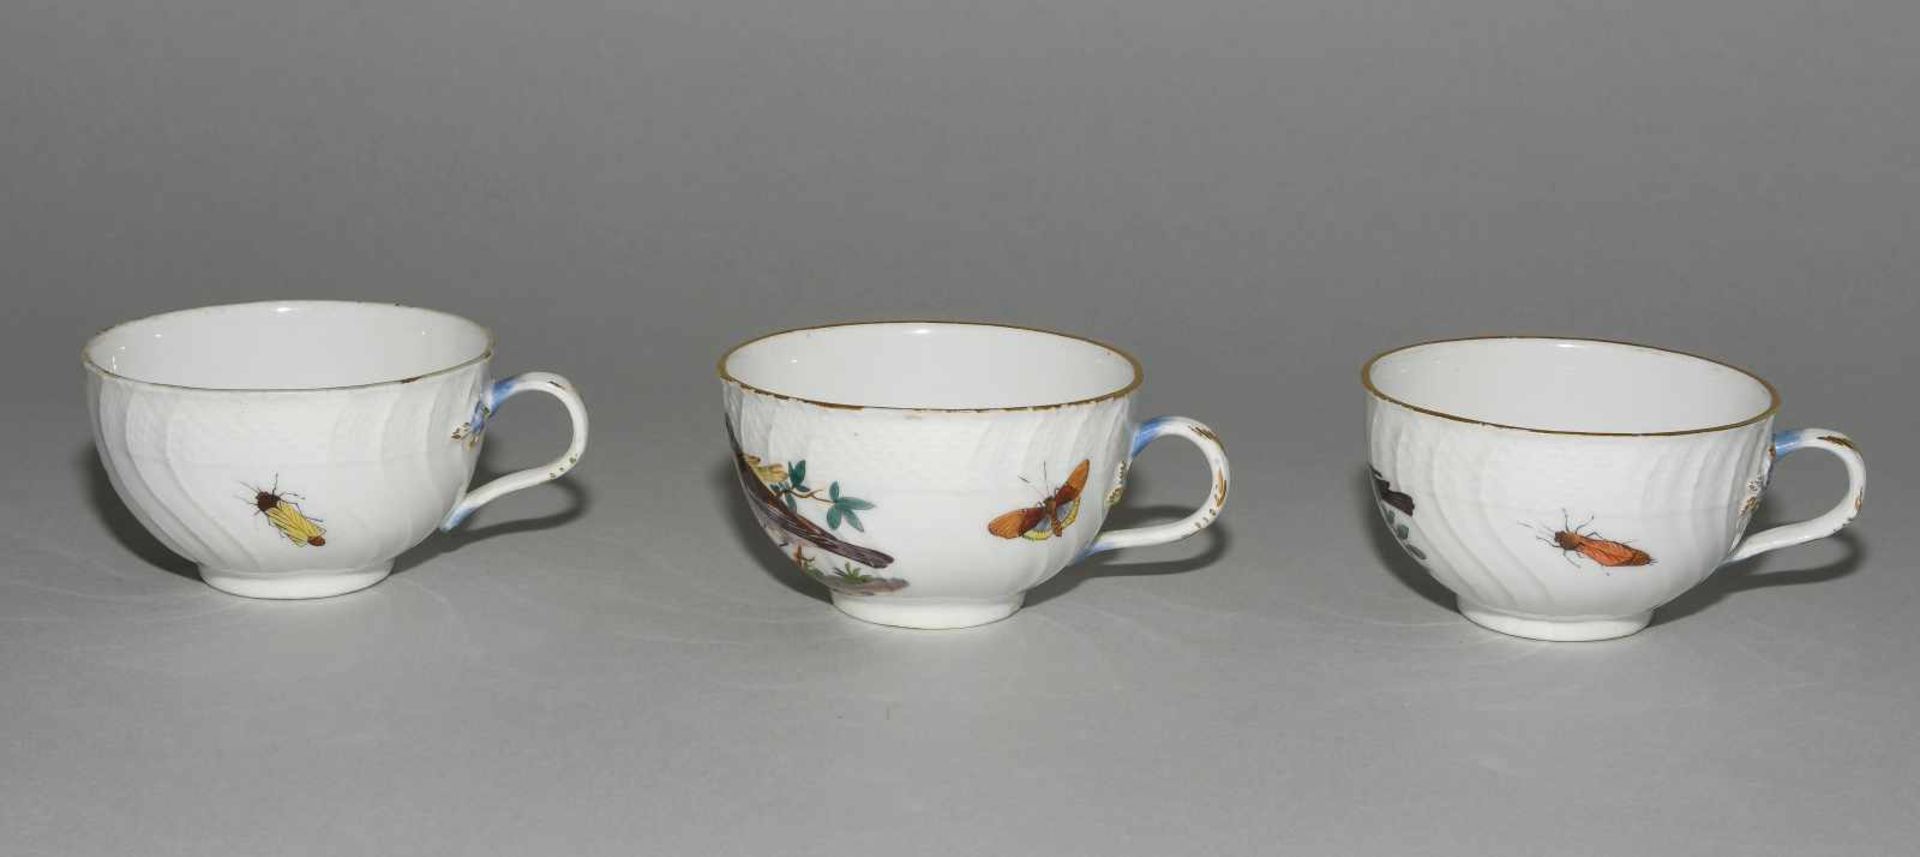 Kaffee- und Teeservice, Meissen Um 1770. Porzellan, Neuozier-Reliefdekor, polychrome Vogelmalerei - Bild 54 aus 64